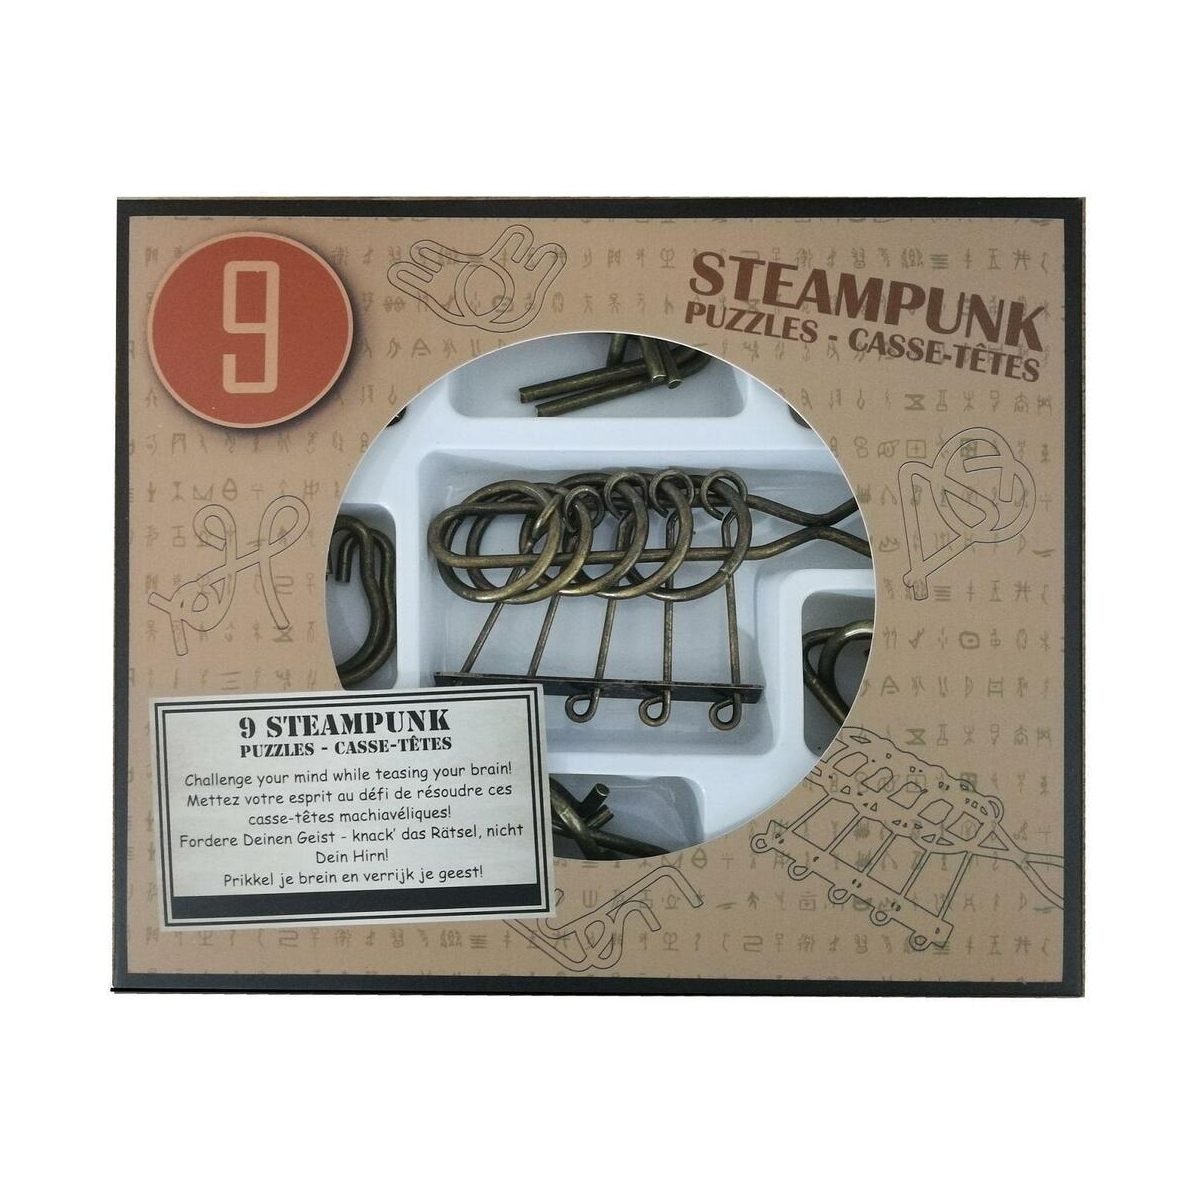 im 9 Steampunk Puzzles brauner Box - Puzzles in EUREKA *-**** 52473200 Display Puzzle (nur erhältlich)